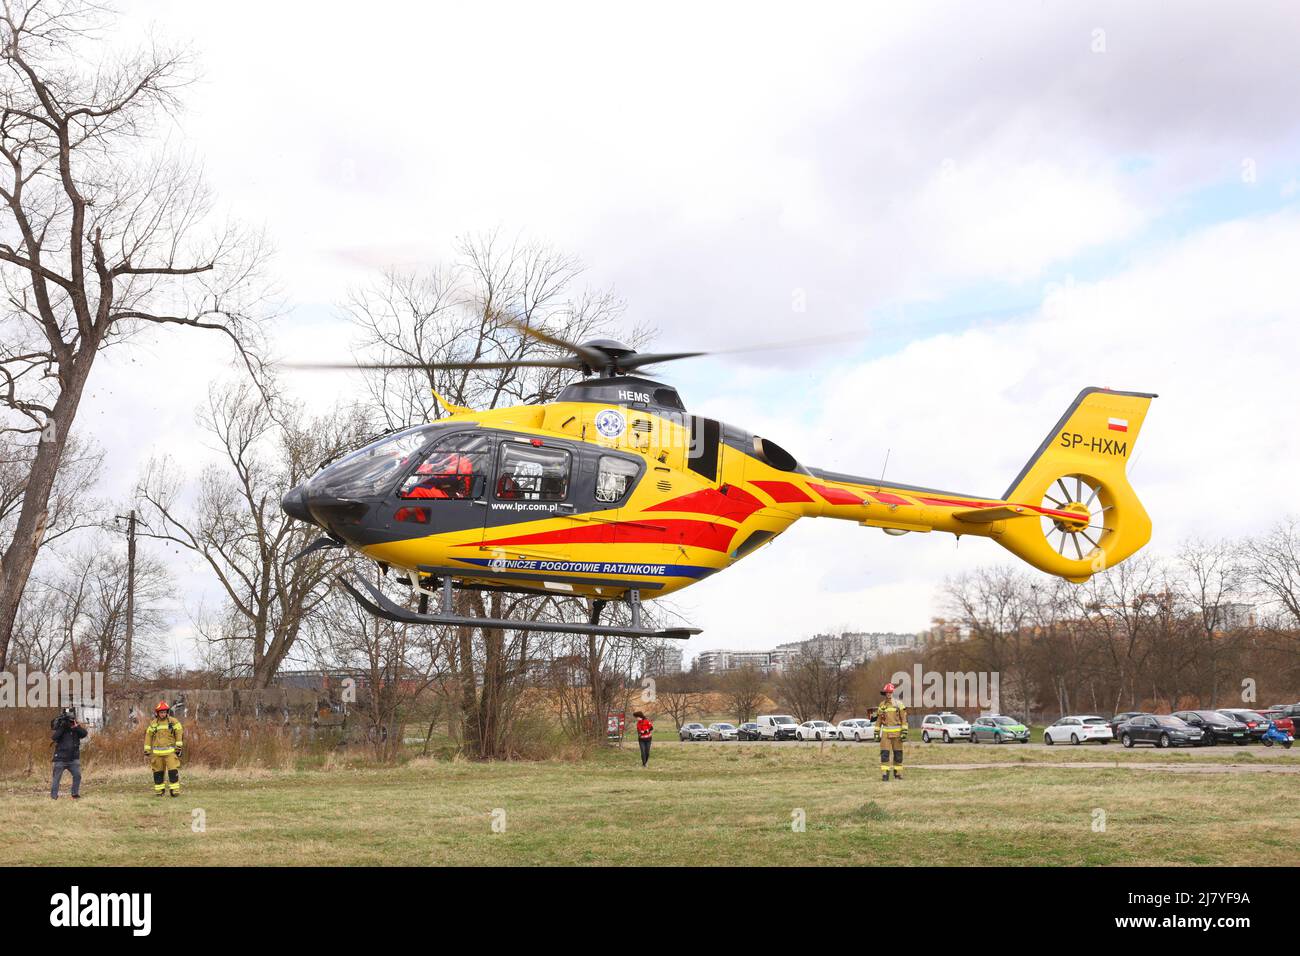 Cracovie. Cracovie. Pologne. L'hélicoptère de sauvetage aérien Eurocopter EC1352 est aéroporté pendant l'exercice d'entraînement d'accident simulé de victimes massives. Banque D'Images